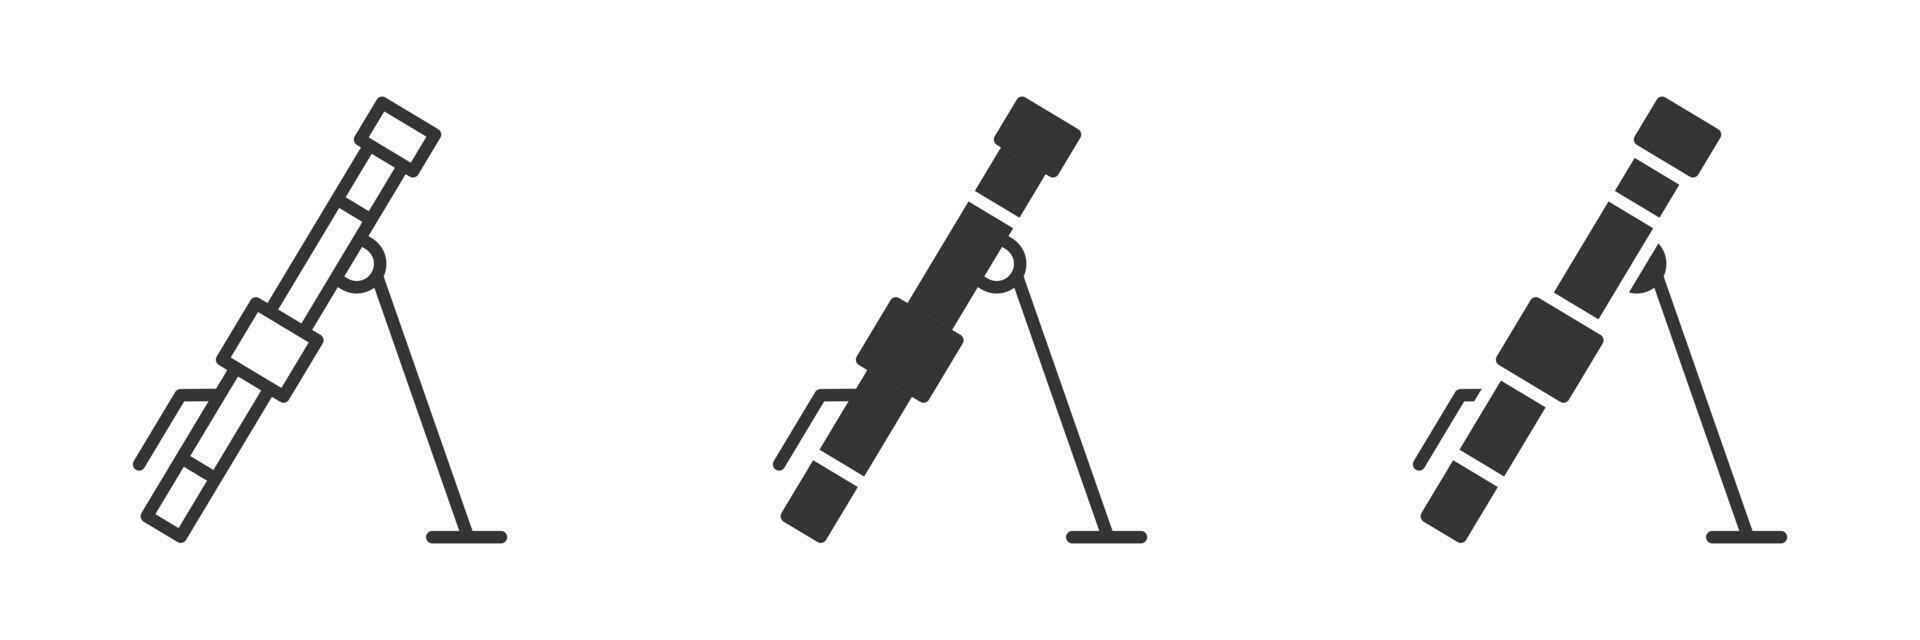 murbruk vapen ikon. vektor illustration.